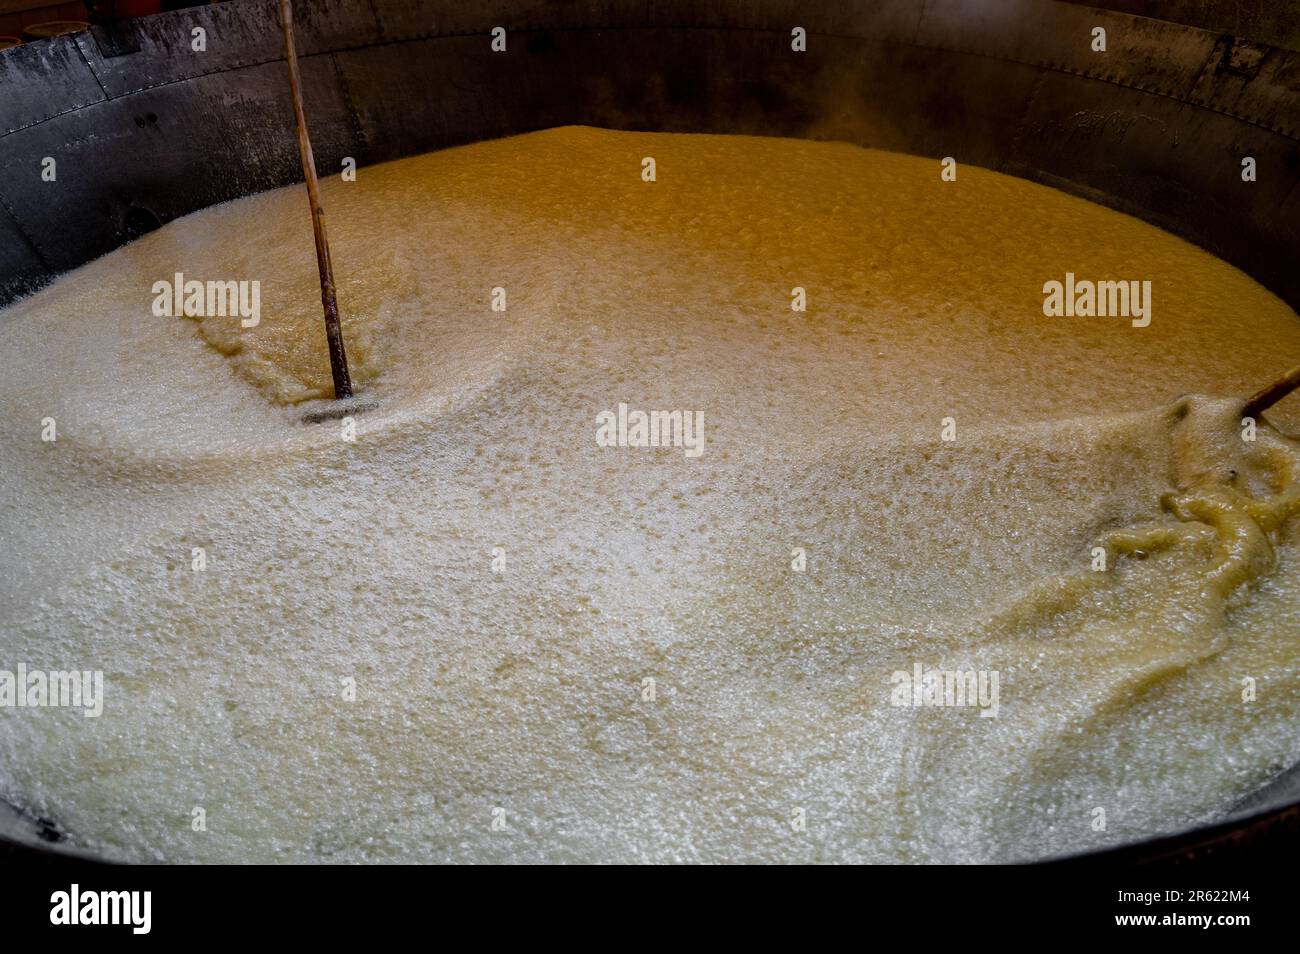 Während der Zuckerrohrherstellung rührt der Zuckerrohrsaft mit Hilfe von Holzbambusstäbchen zur Konzentration in einem großen Utensil. Während der Herstellung von Stockfoto